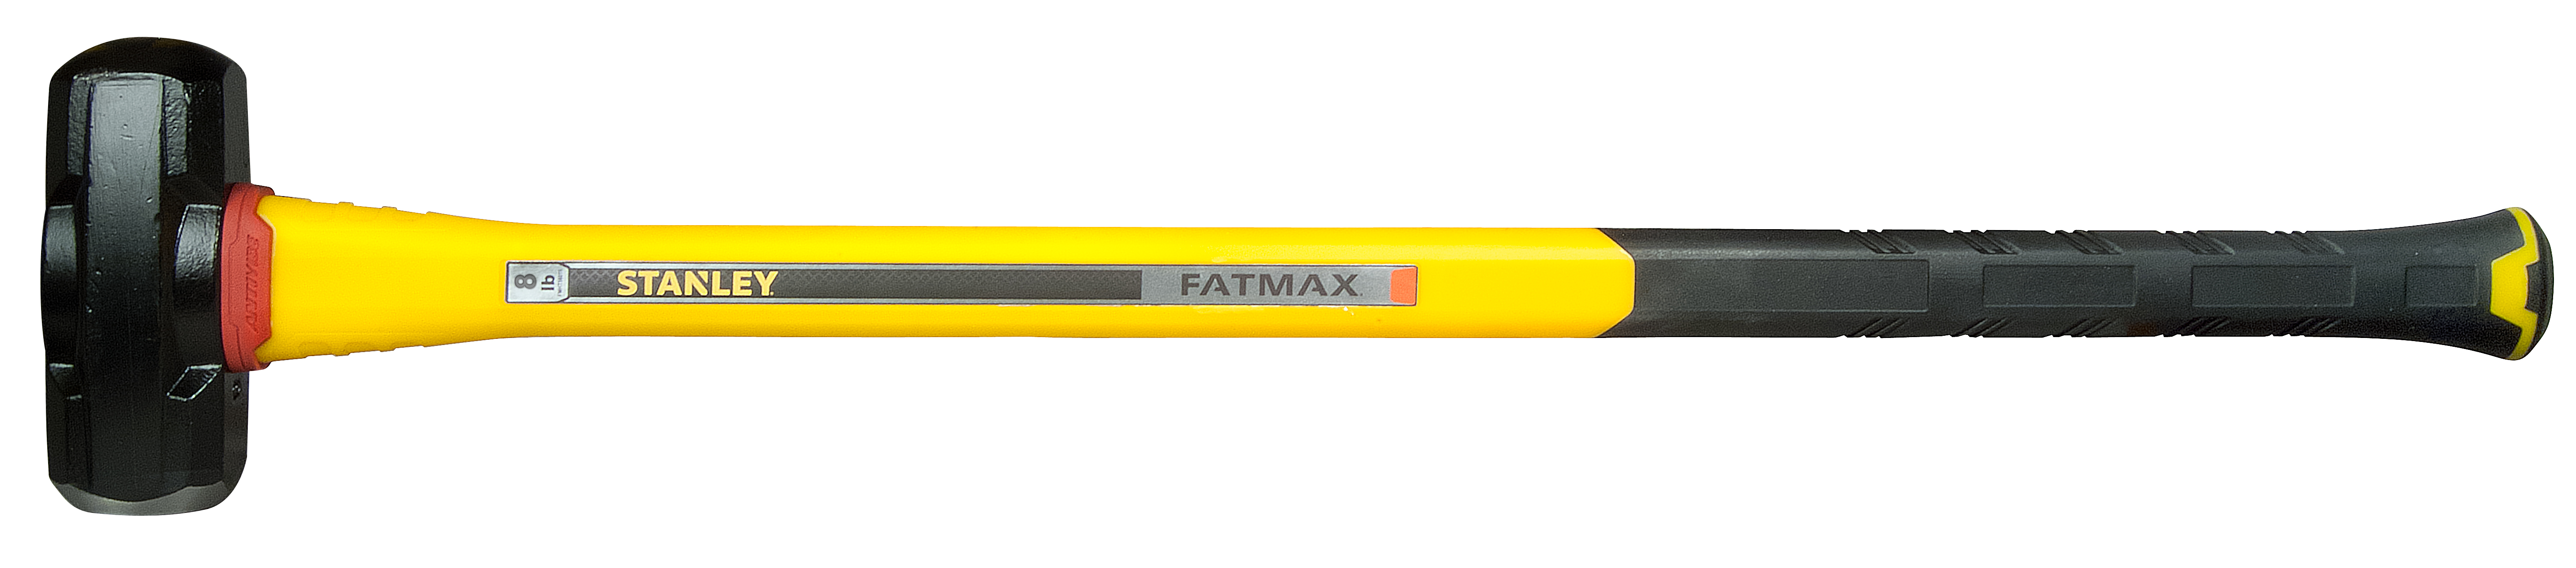 Fatmax Voorhamer Antivibratie 3.6kg